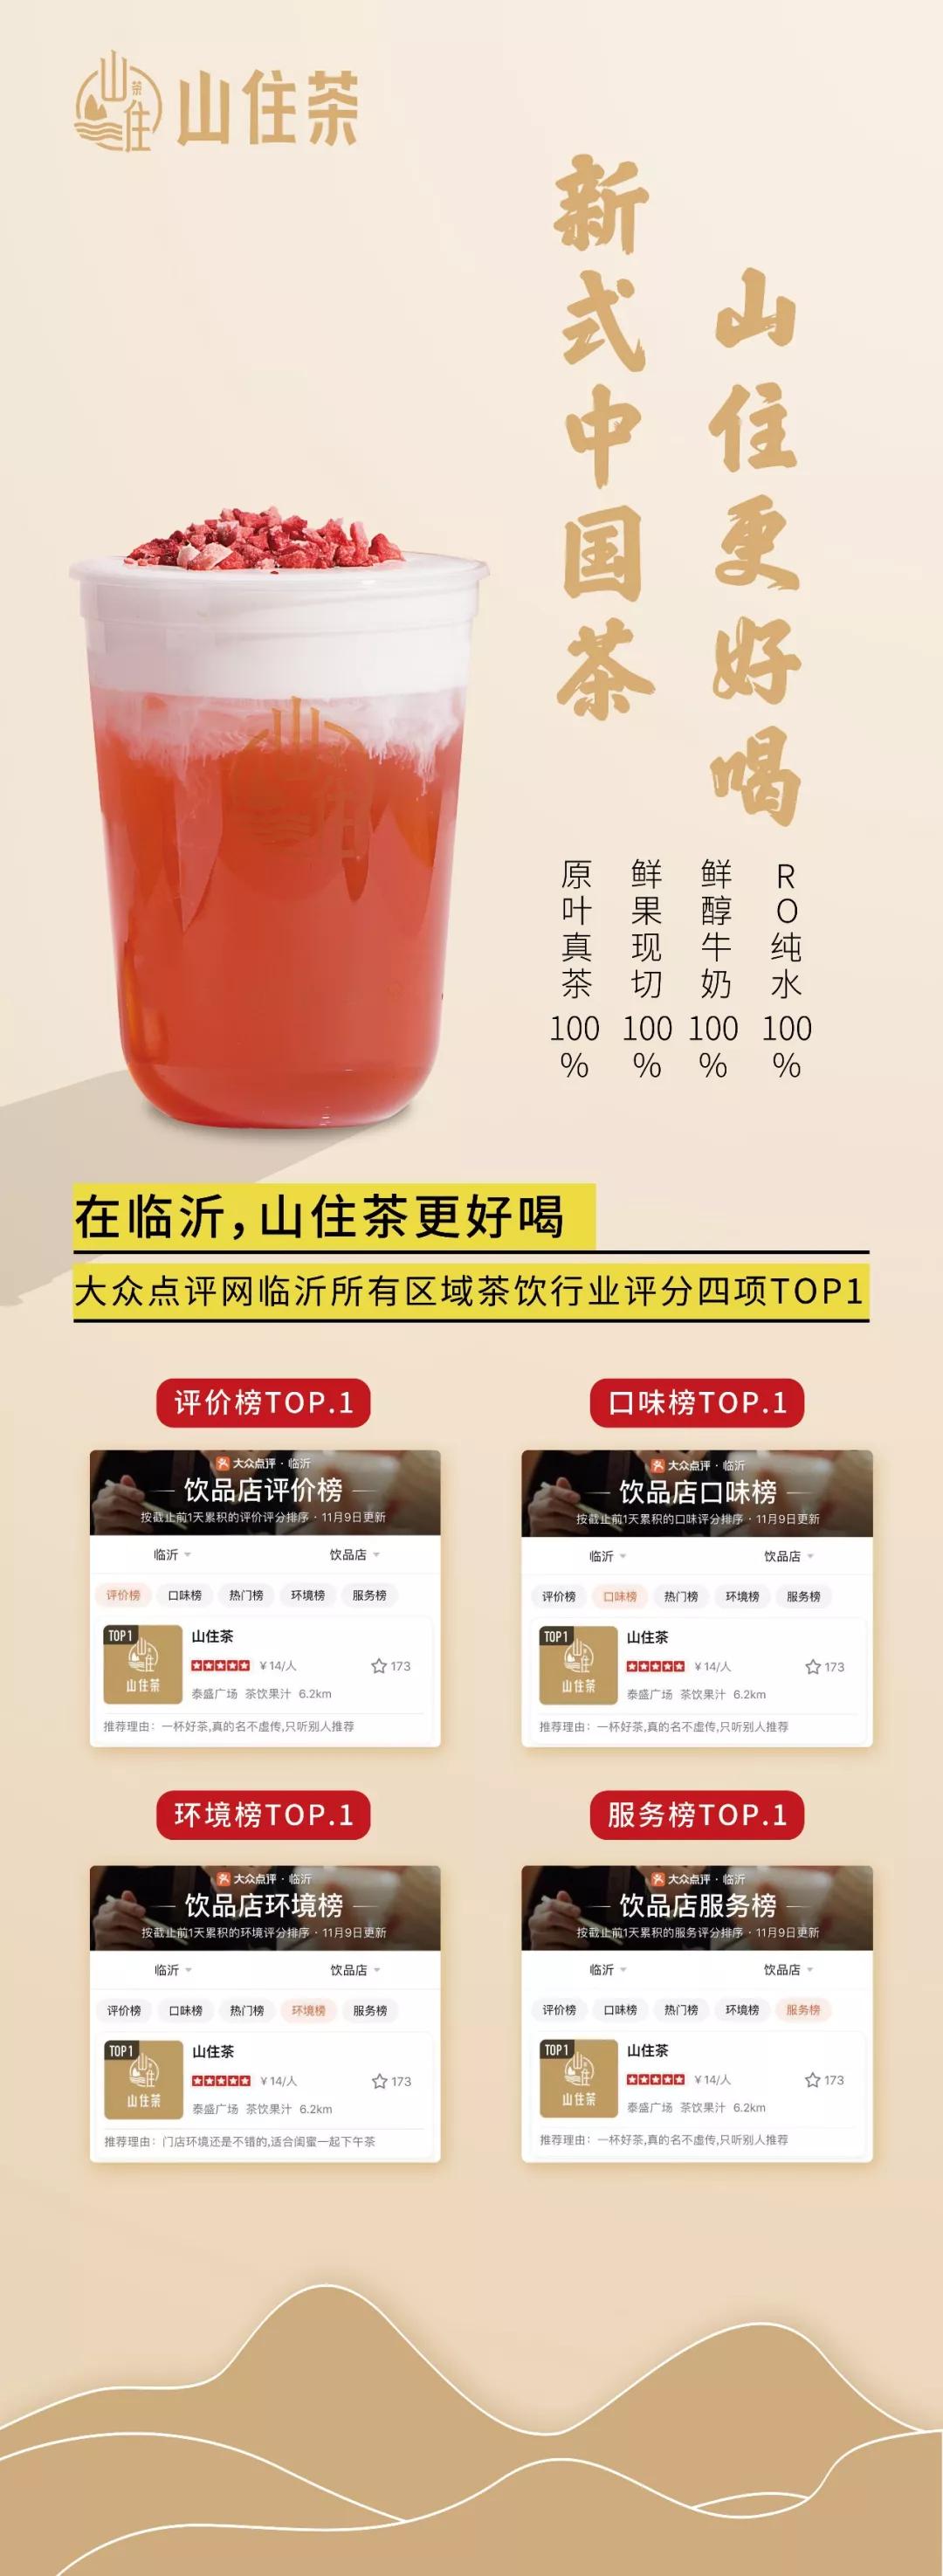 1032万人的认证很荣幸喜提大众点评茶饮行业4项榜单TOP1